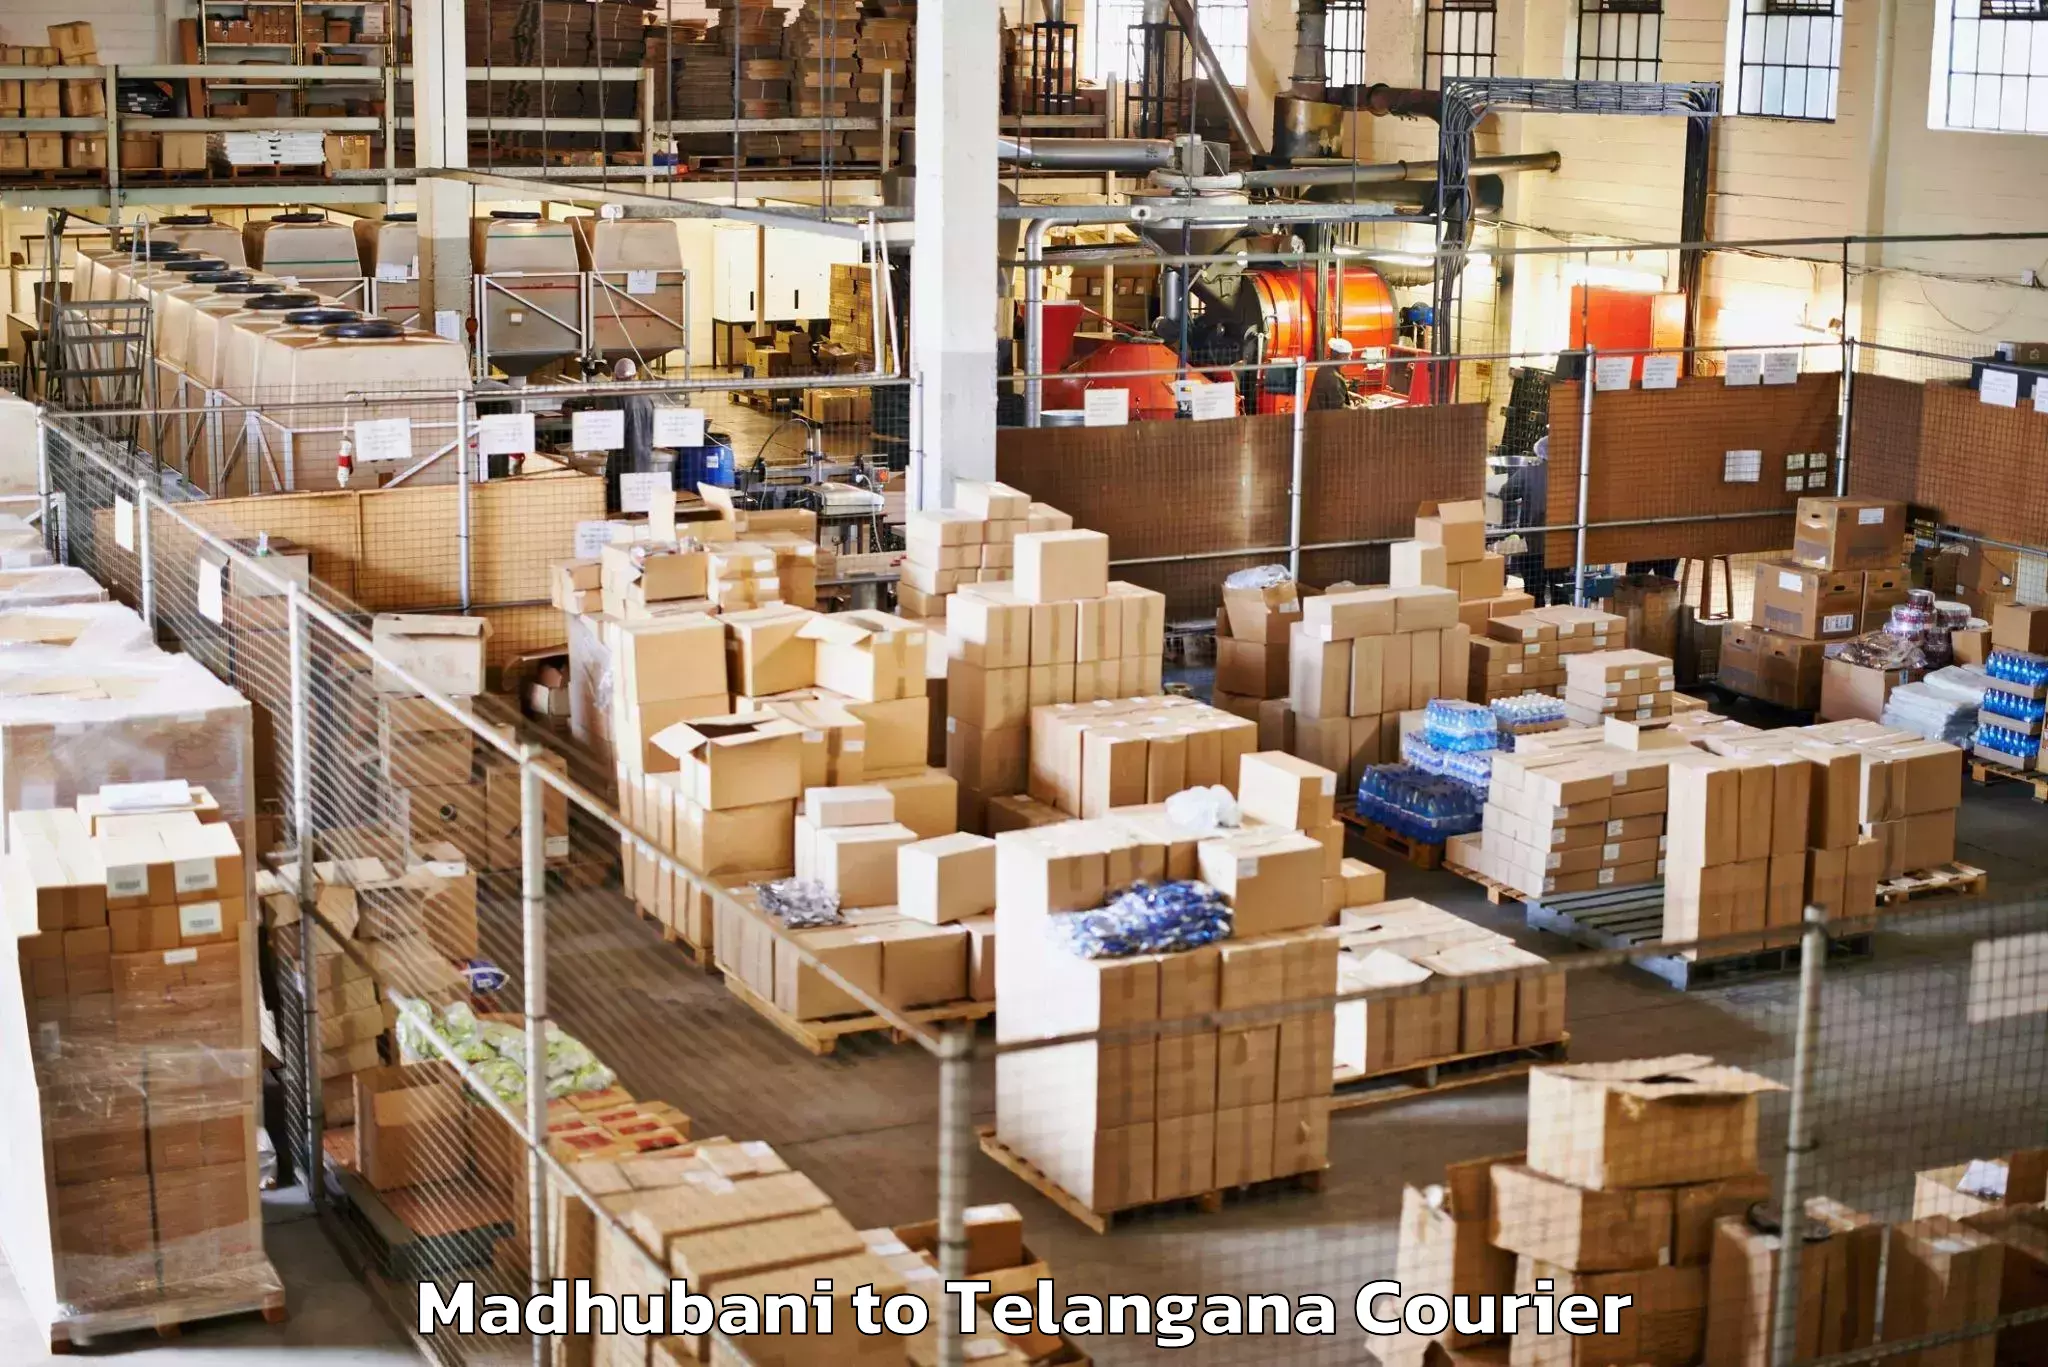 Luggage shipping specialists Madhubani to Bijinapalle